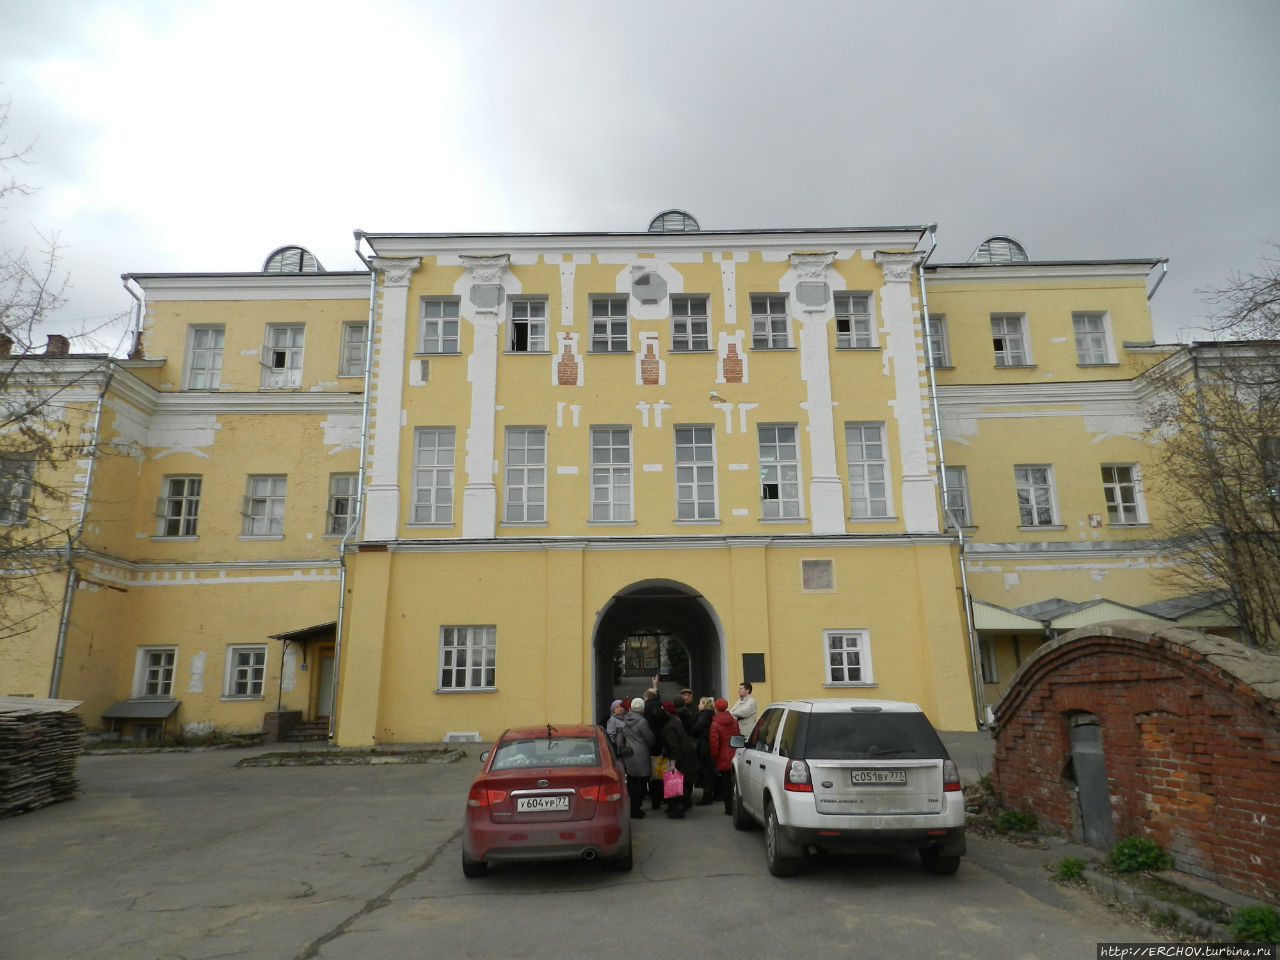 Лефортовский дворец на Яузе Москва, Россия